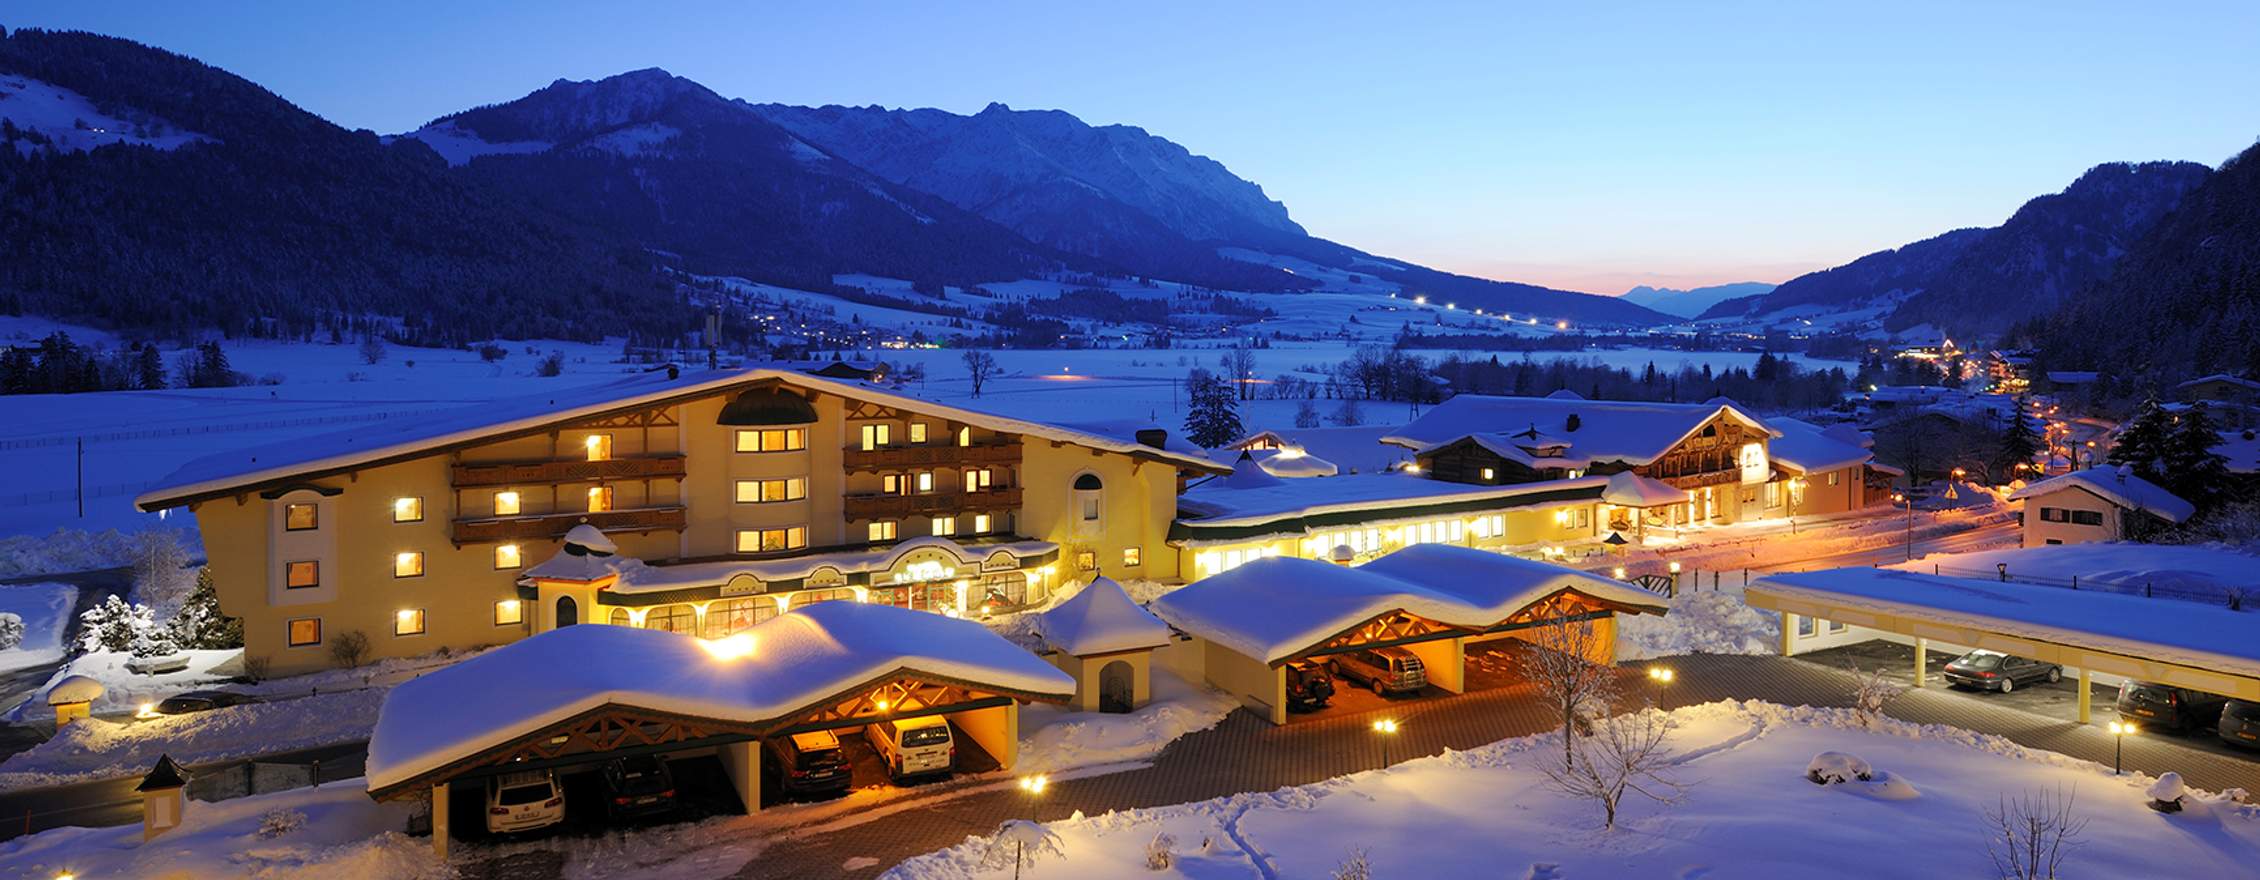 Hotel Seehof in Tirol – Aktivurlaub in Österreich